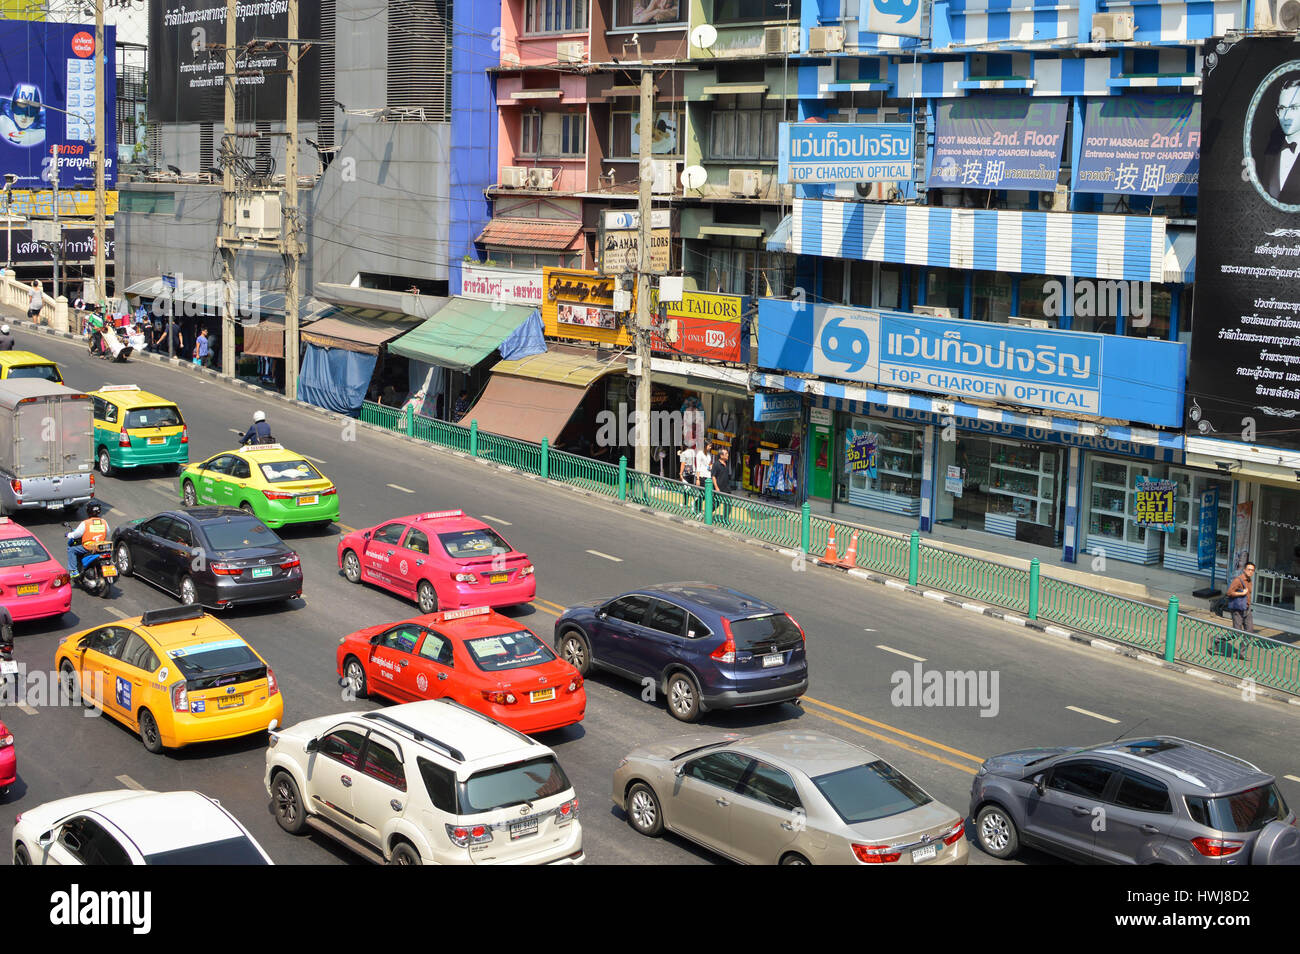 Bangkok, Thailand - 20. Februar 2017: Bunte Taxi Autos warten im Verkehr im Geschäftsviertel von Bangkok, Thailand, in der Nähe von Einkaufszentrum Central World. Stockfoto